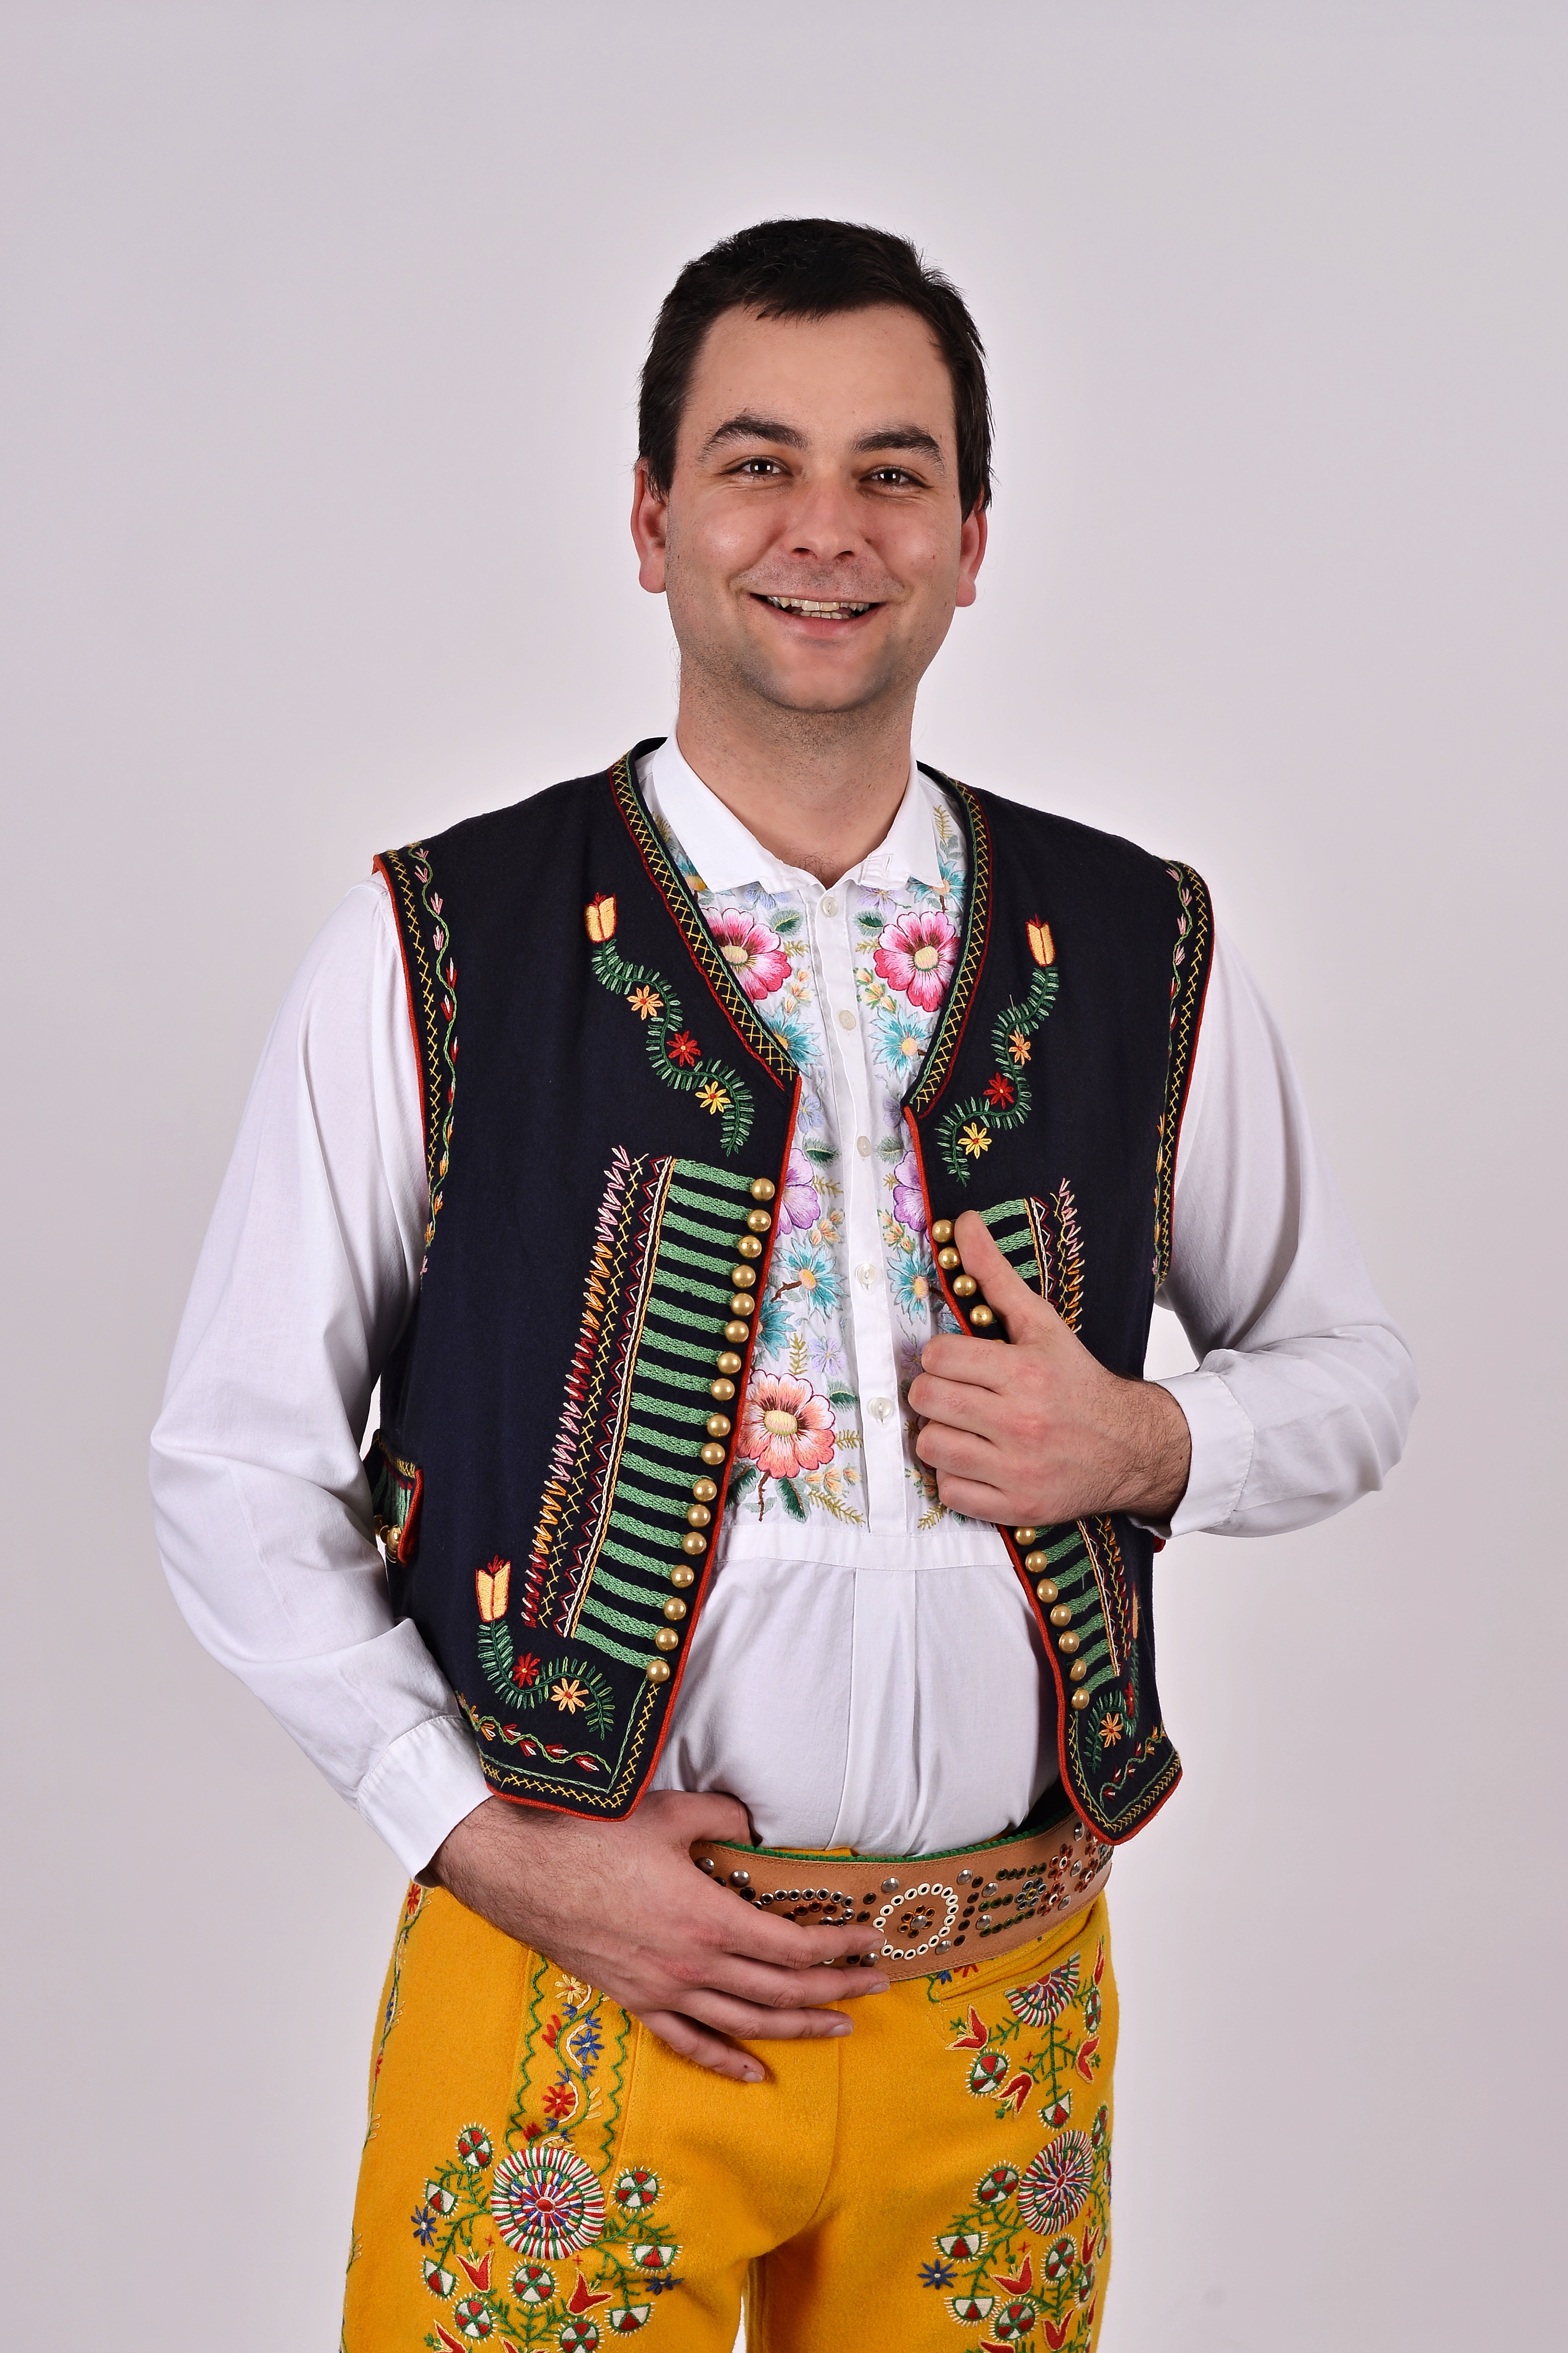 Ivo Zugárek